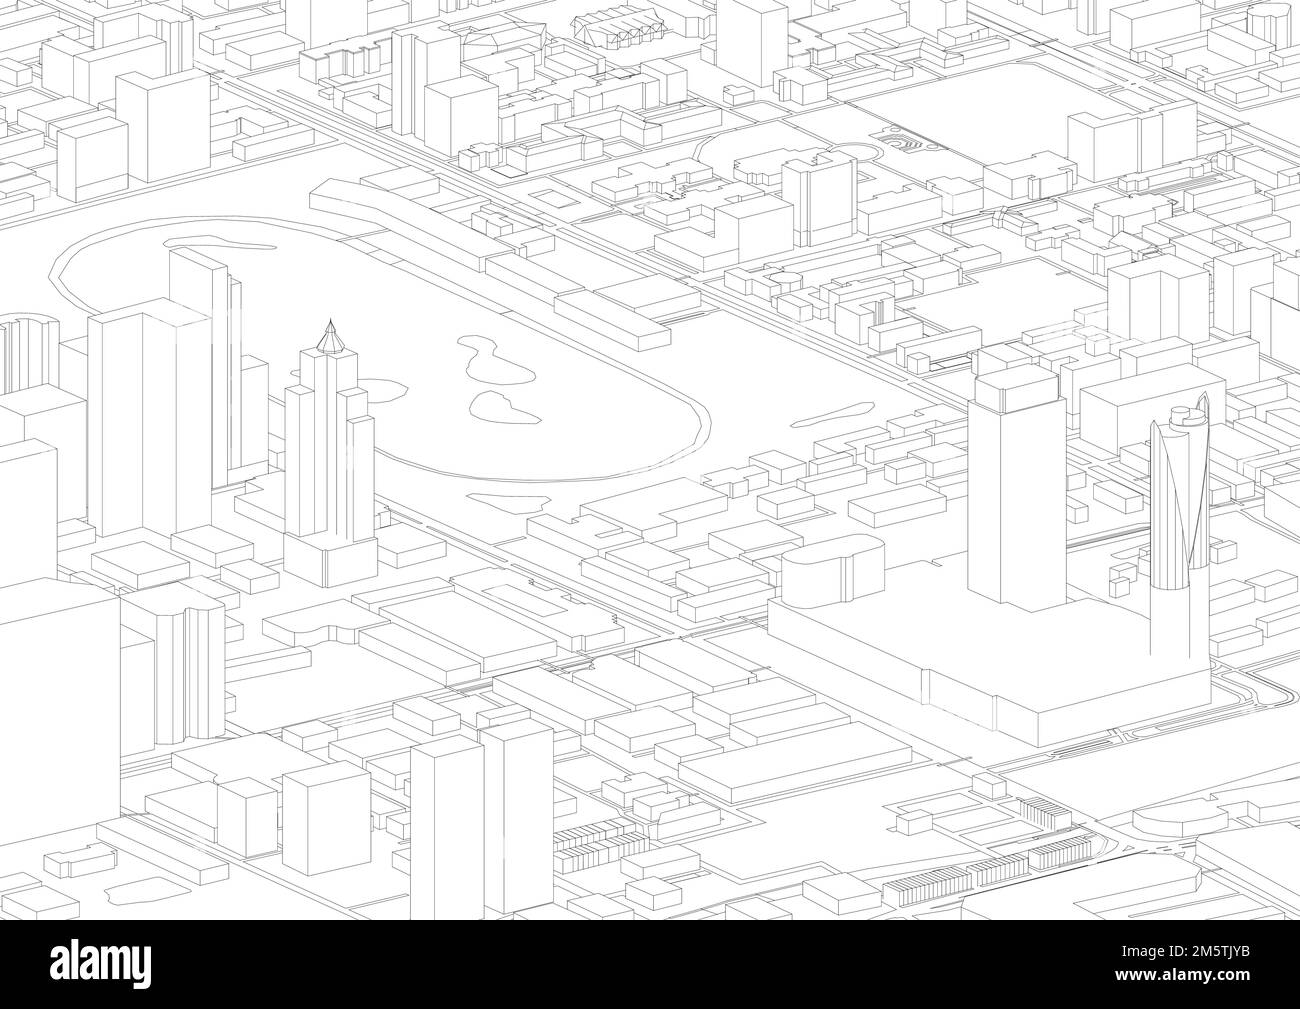 architecture isométrique ville de bangkok. infographie isométrique avec bâtiment d'architecture, urbain, arrière-plan blanc abstrait, vecteur. isométrique Illustration de Vecteur